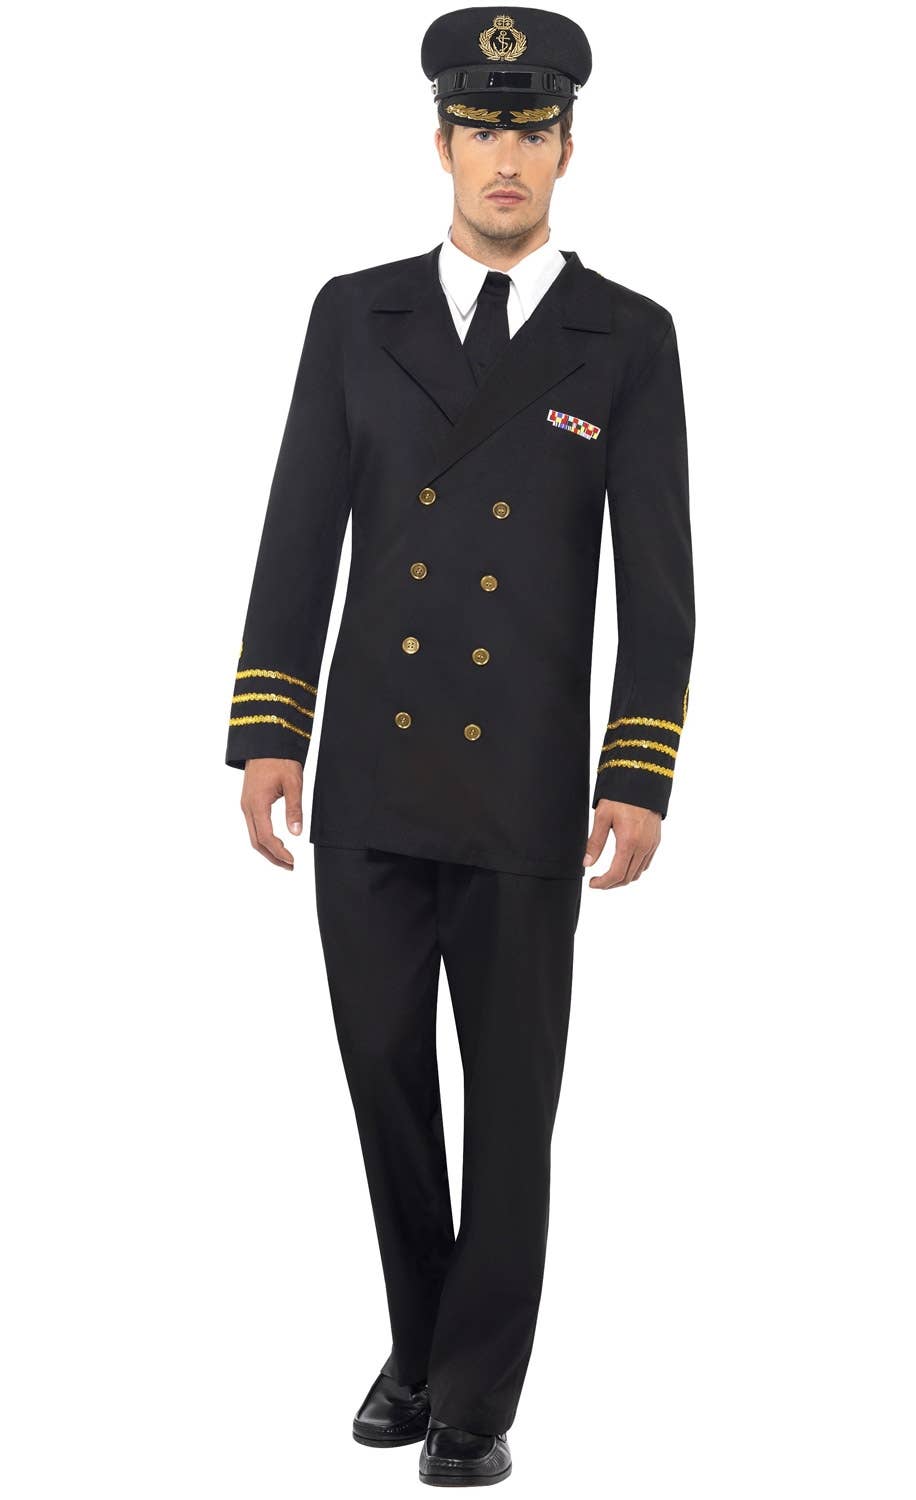 Men's Navy Captain Uniform Fancy Dress Costume Image 1